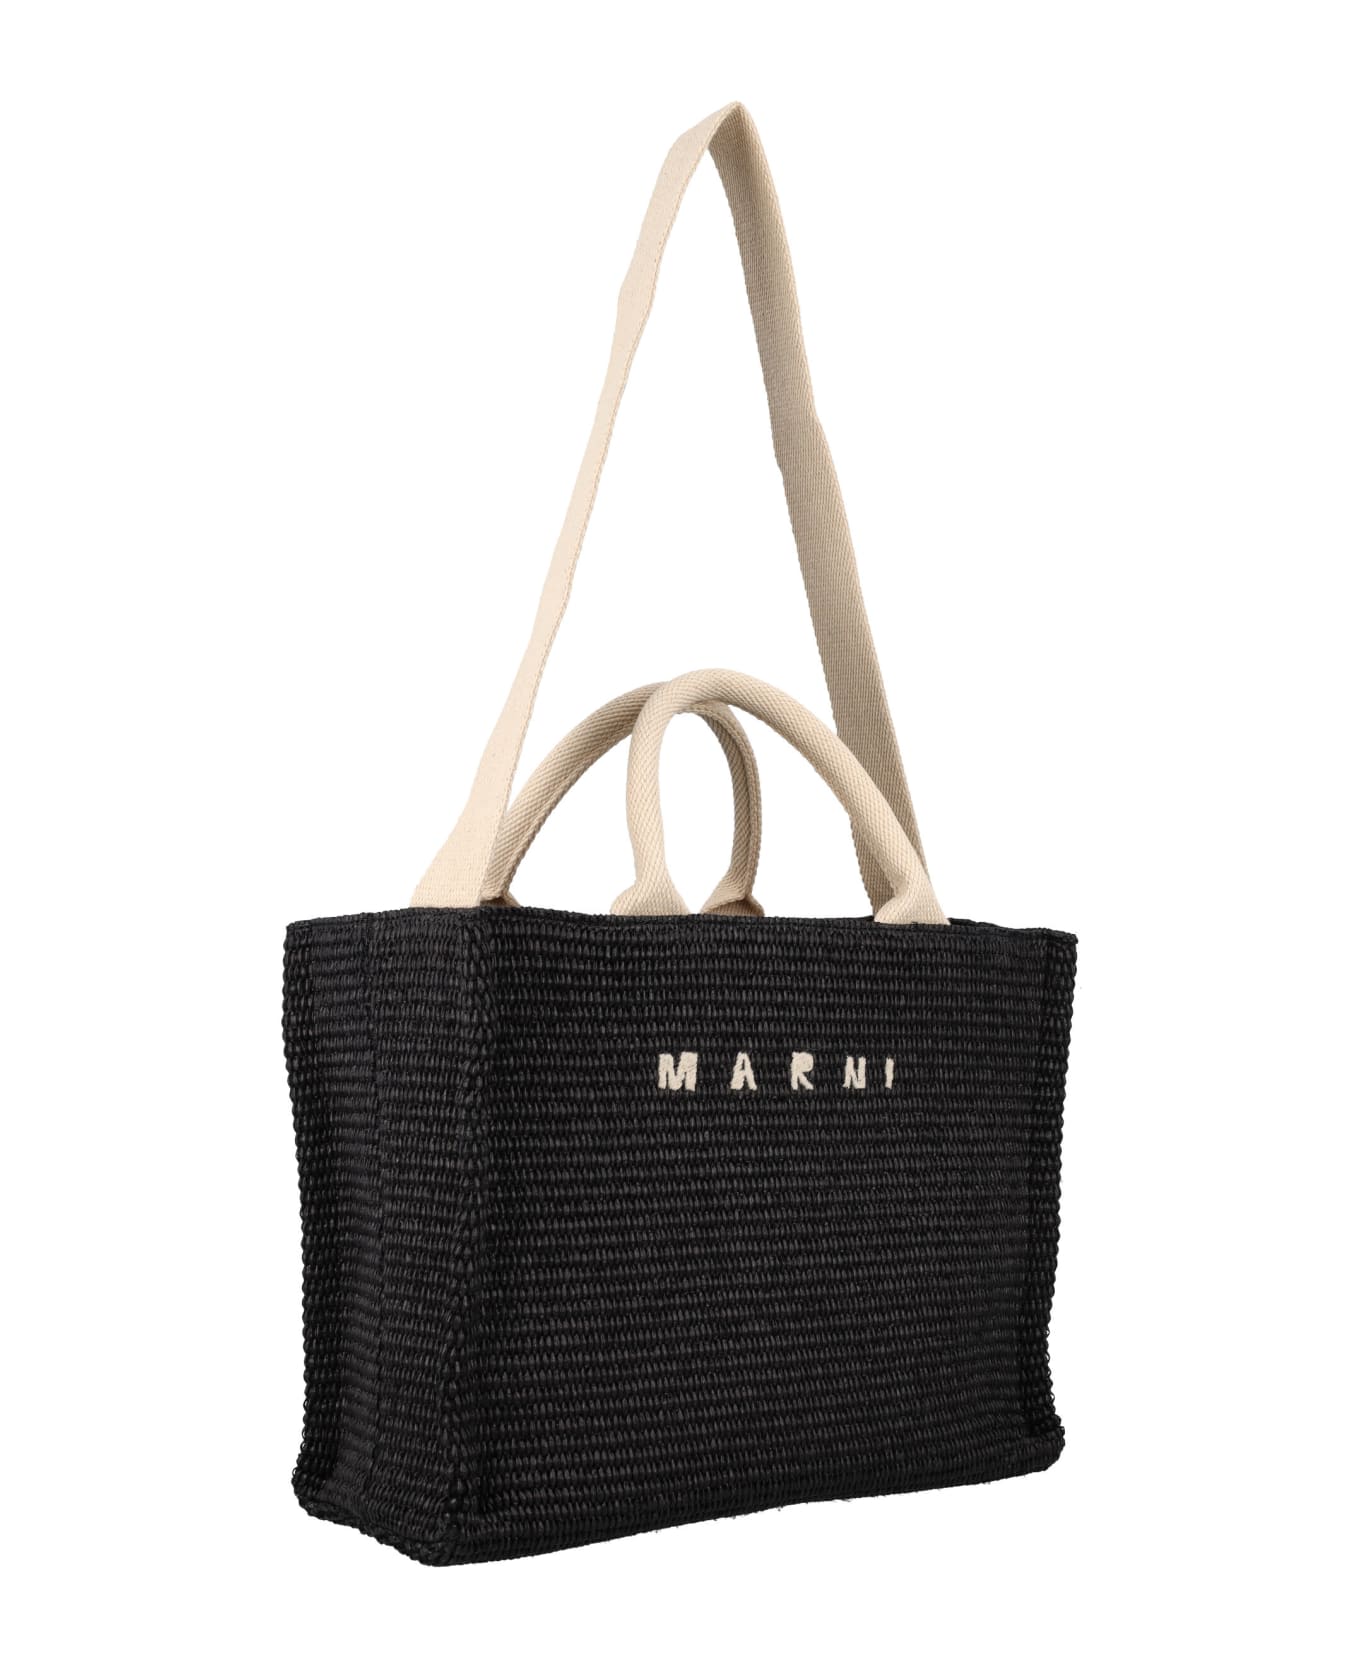 Marni Small Raffia Tote Bag - BLACK トートバッグ